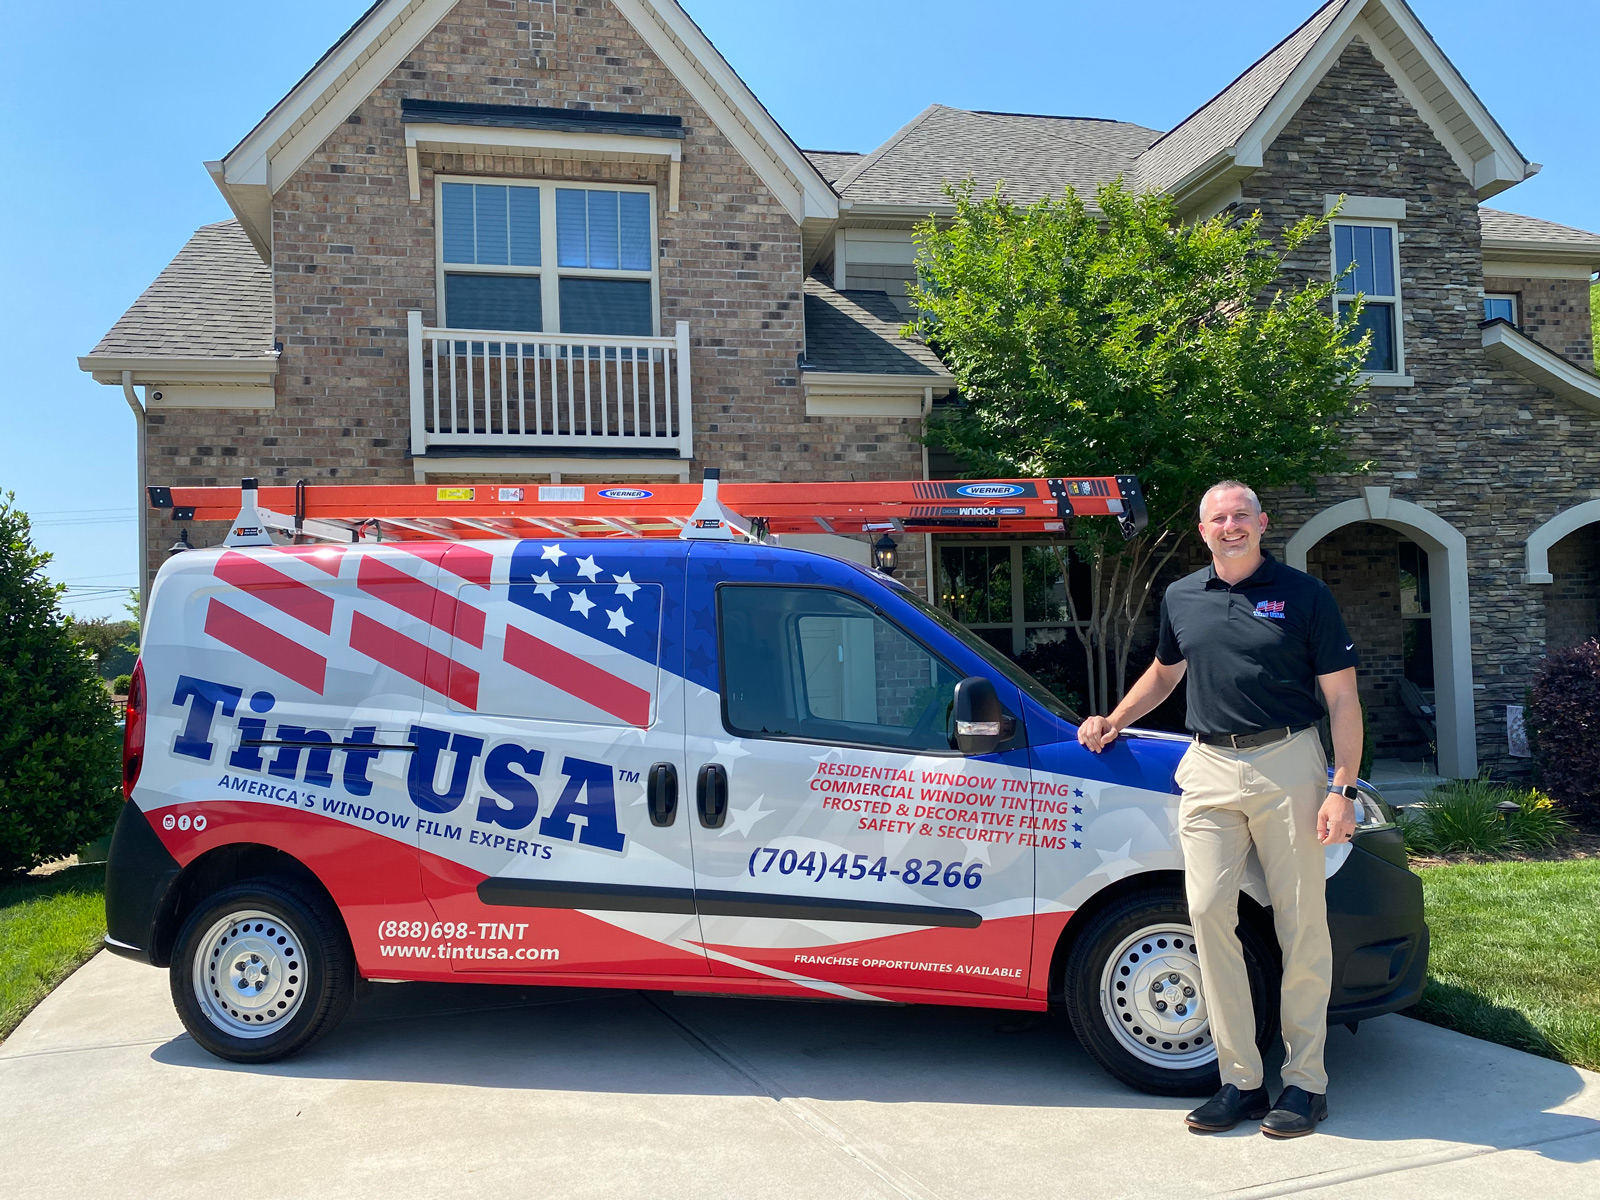 Tint USA Van and salesman